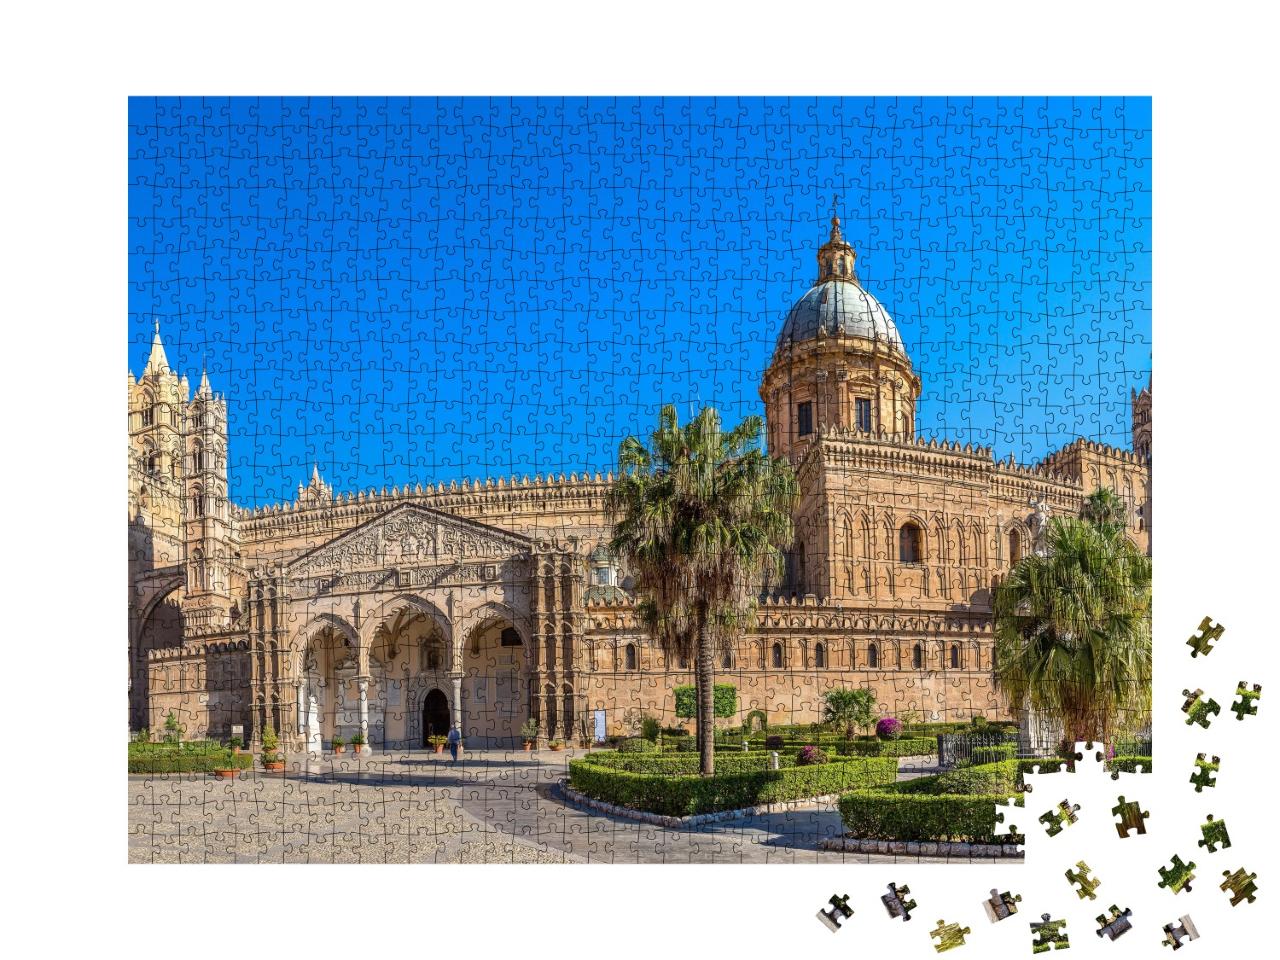 Puzzle de 1000 pièces « La cathédrale de Palerme, Italie »